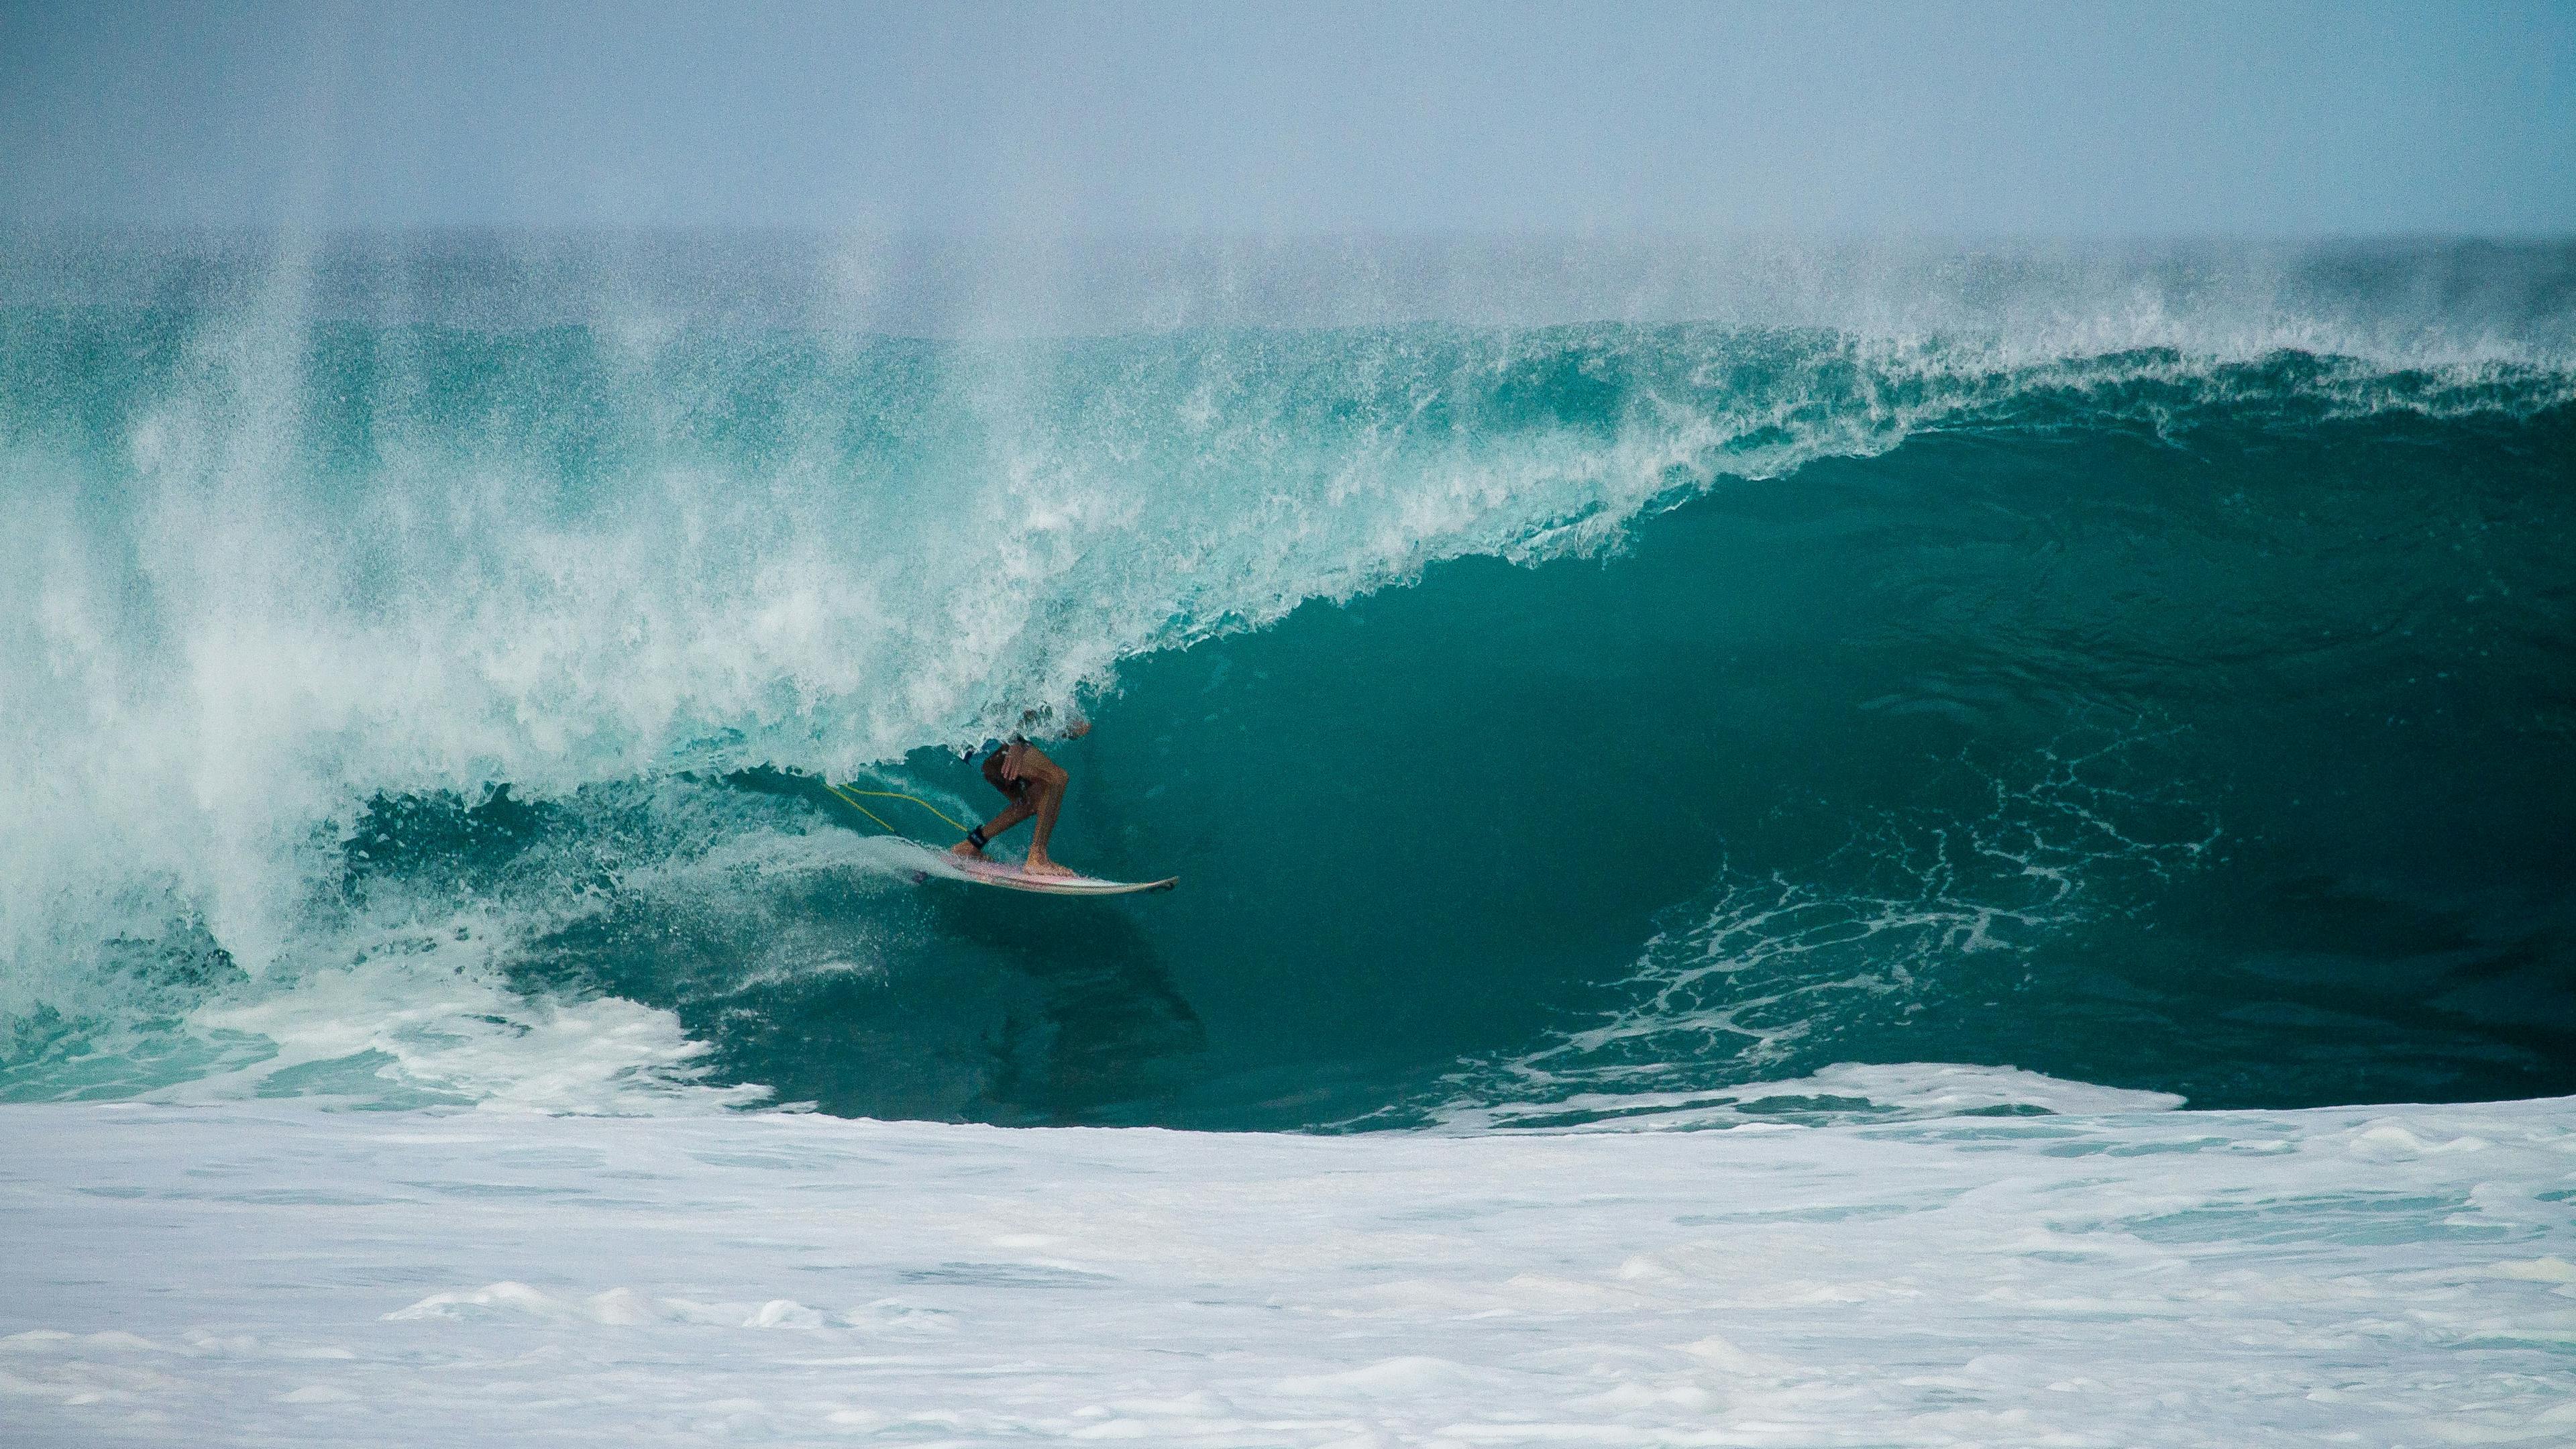 türkisfarbendes Wasser, welches sich gerade zu einer hohen Welle formt.Mittendrin erkennt man einen Surfer.